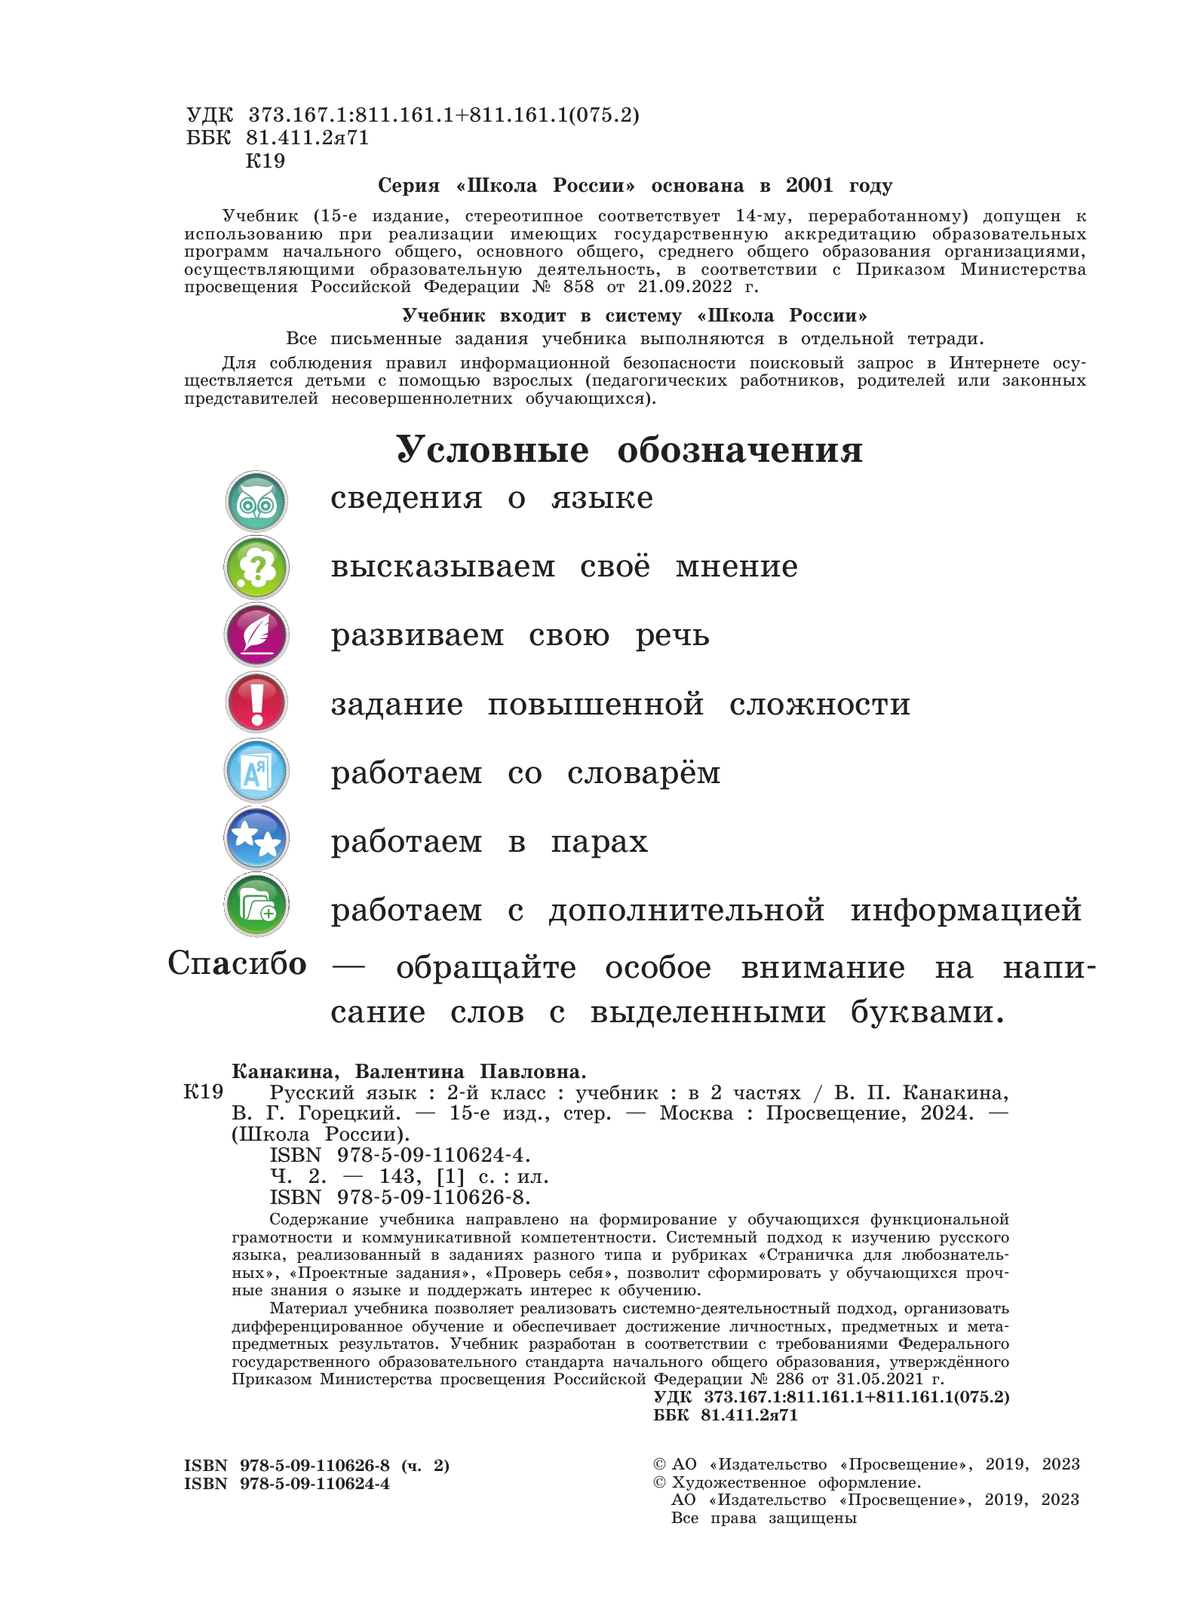 Русский язык. 2 класс. Учебник. В 2 ч. Часть 2 3